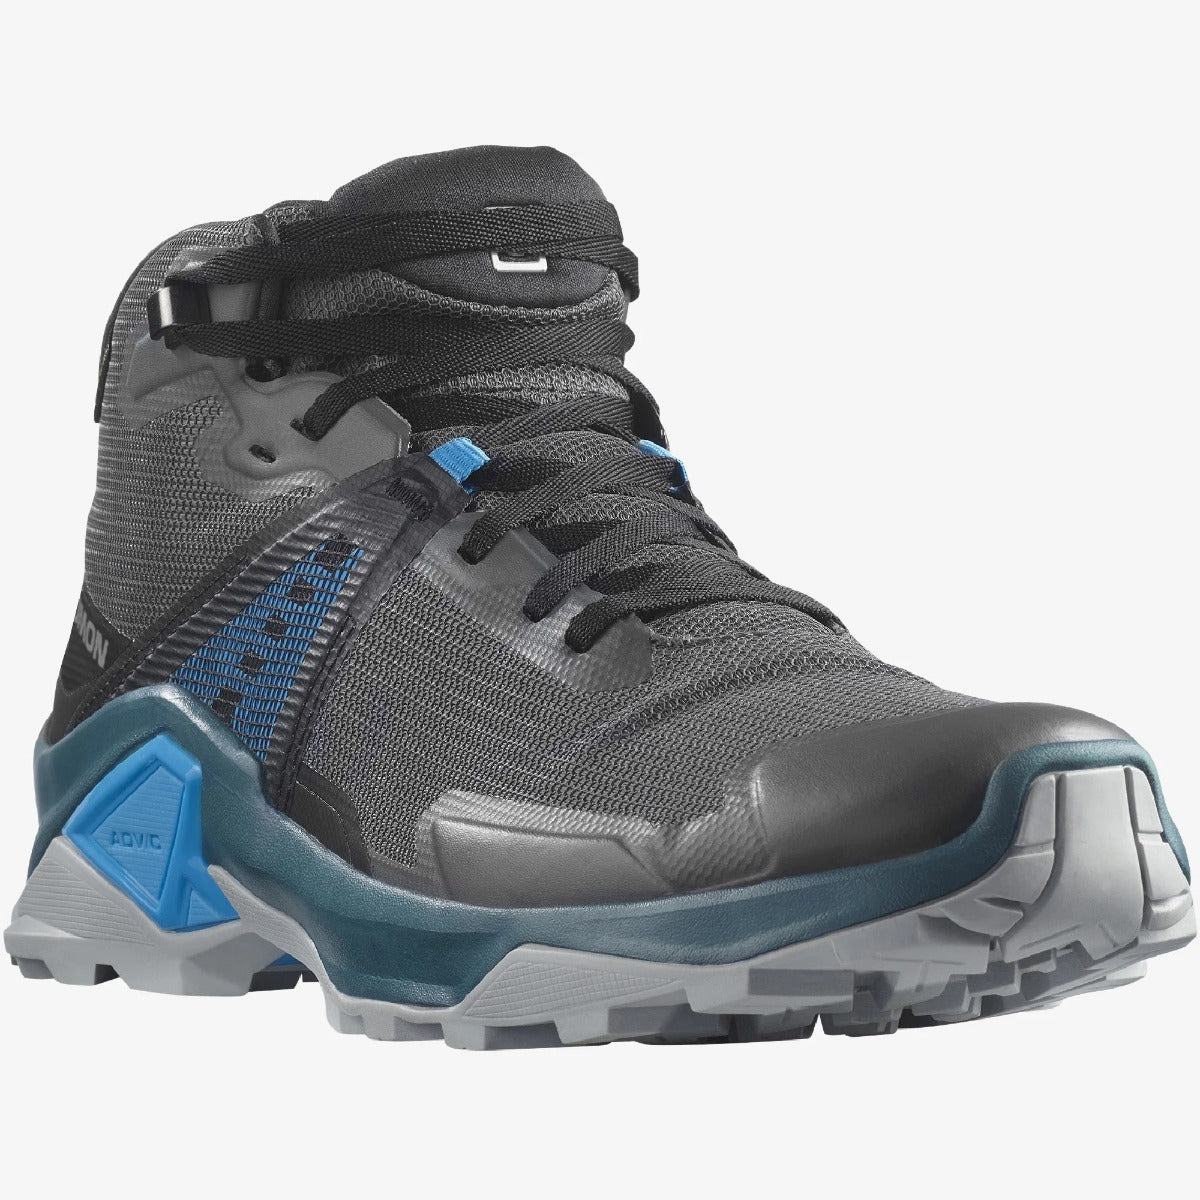 Salomon X Raise 2 Mid Gore-Tex  Hiking Boots Men's (Magnet Black Blithe Blue)